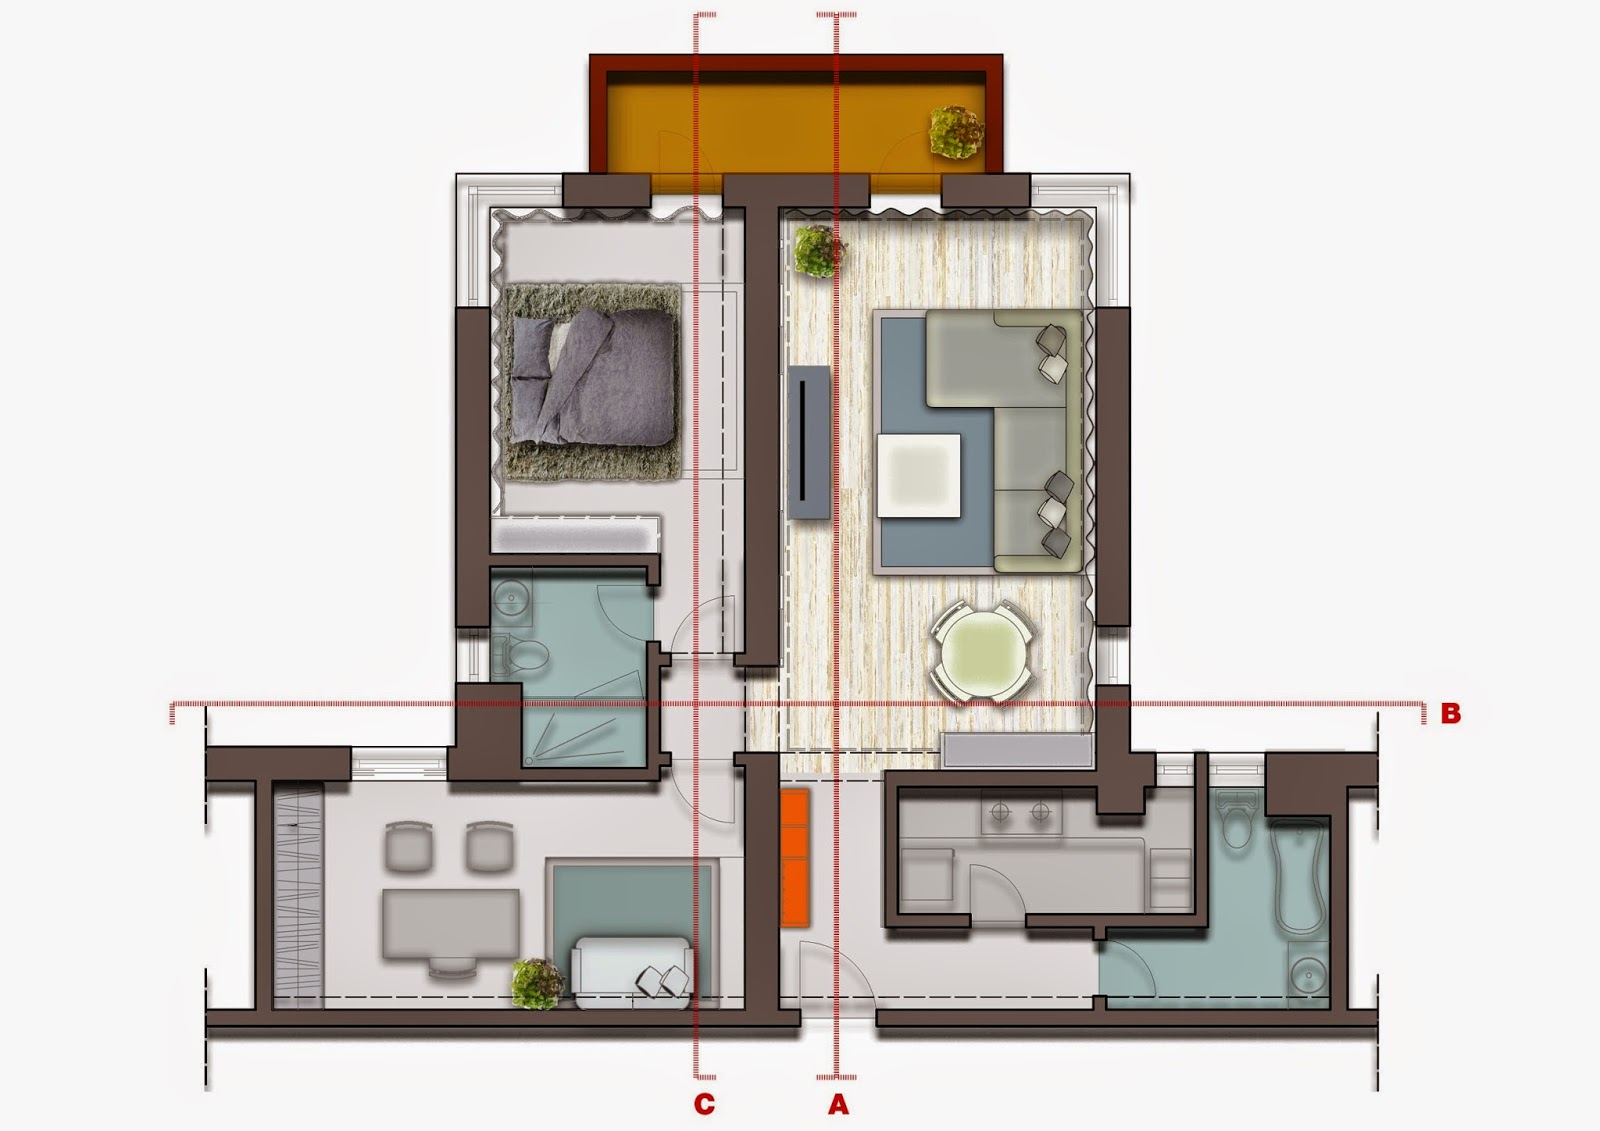 نموذج تصميم شقة سكنية مساحة 100 متر بالرسومات الهندسية والصور